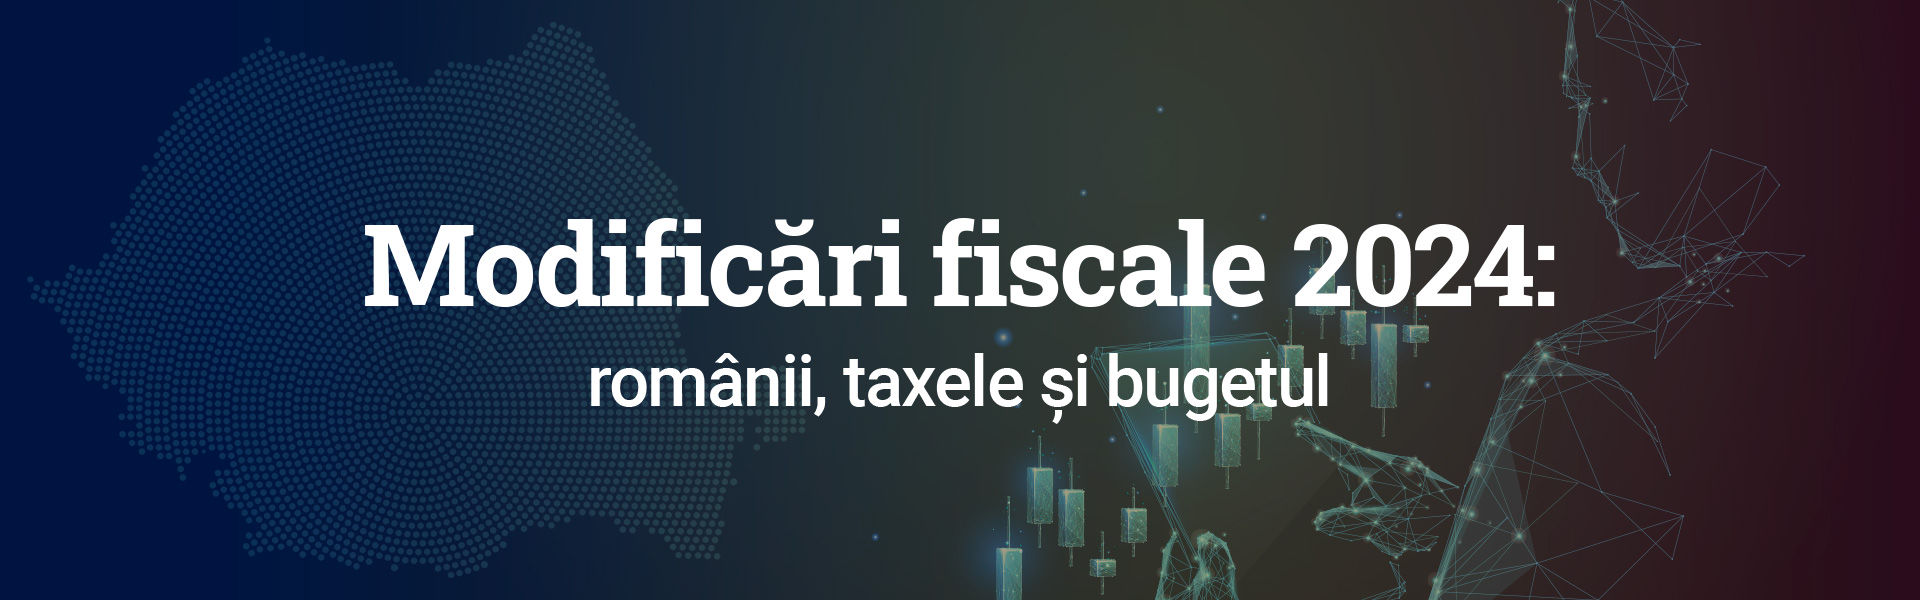 Modificări fiscale 2024: românii, taxele și bugetul